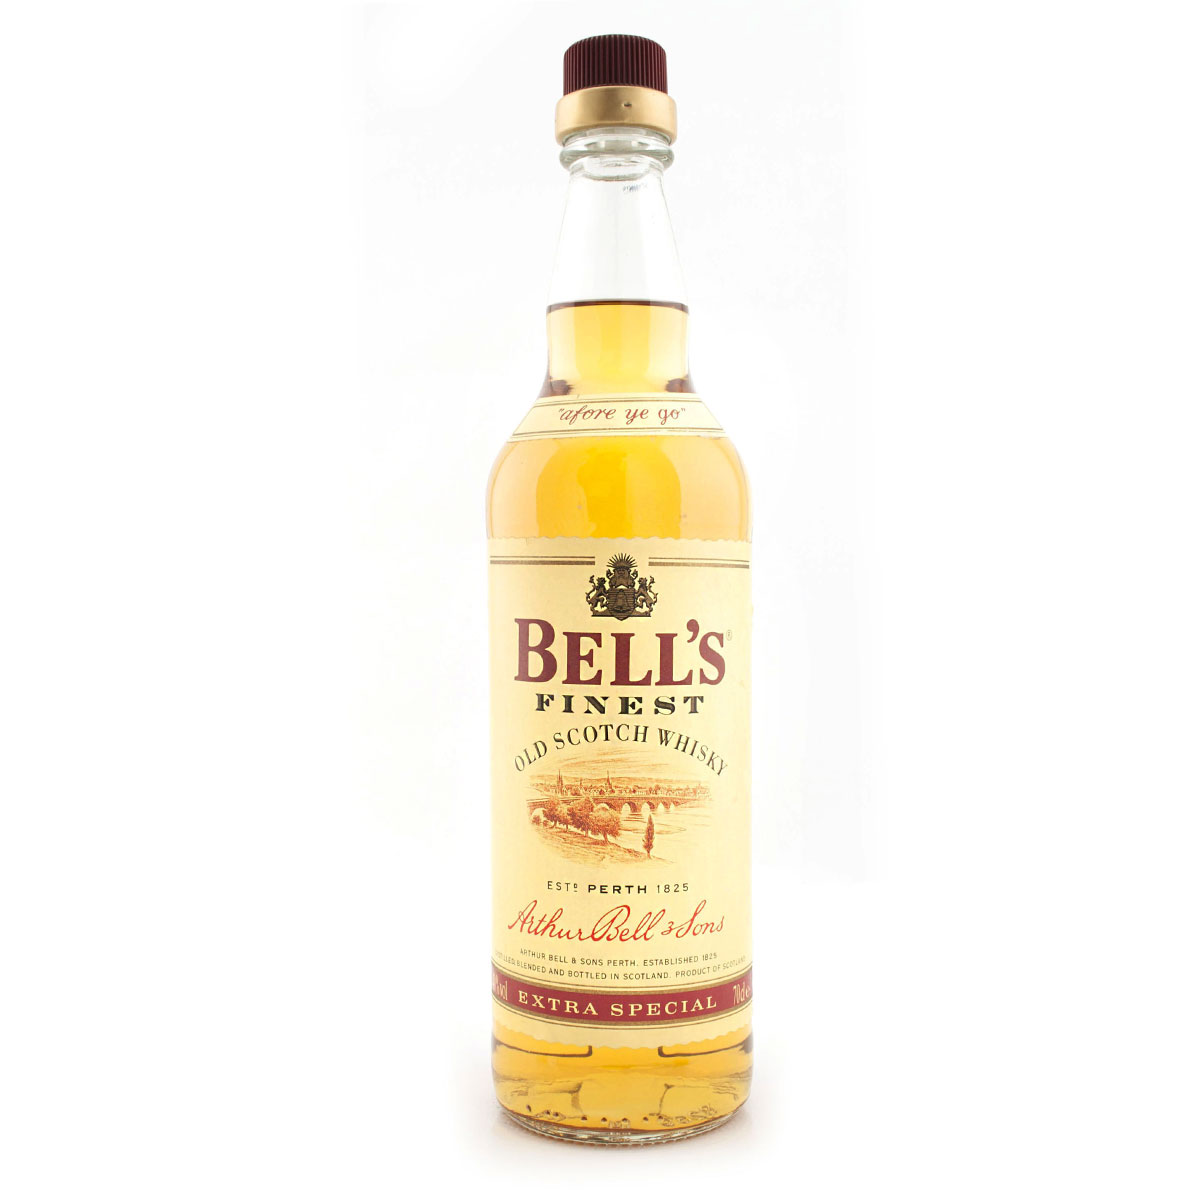 a bottle of bells whisky